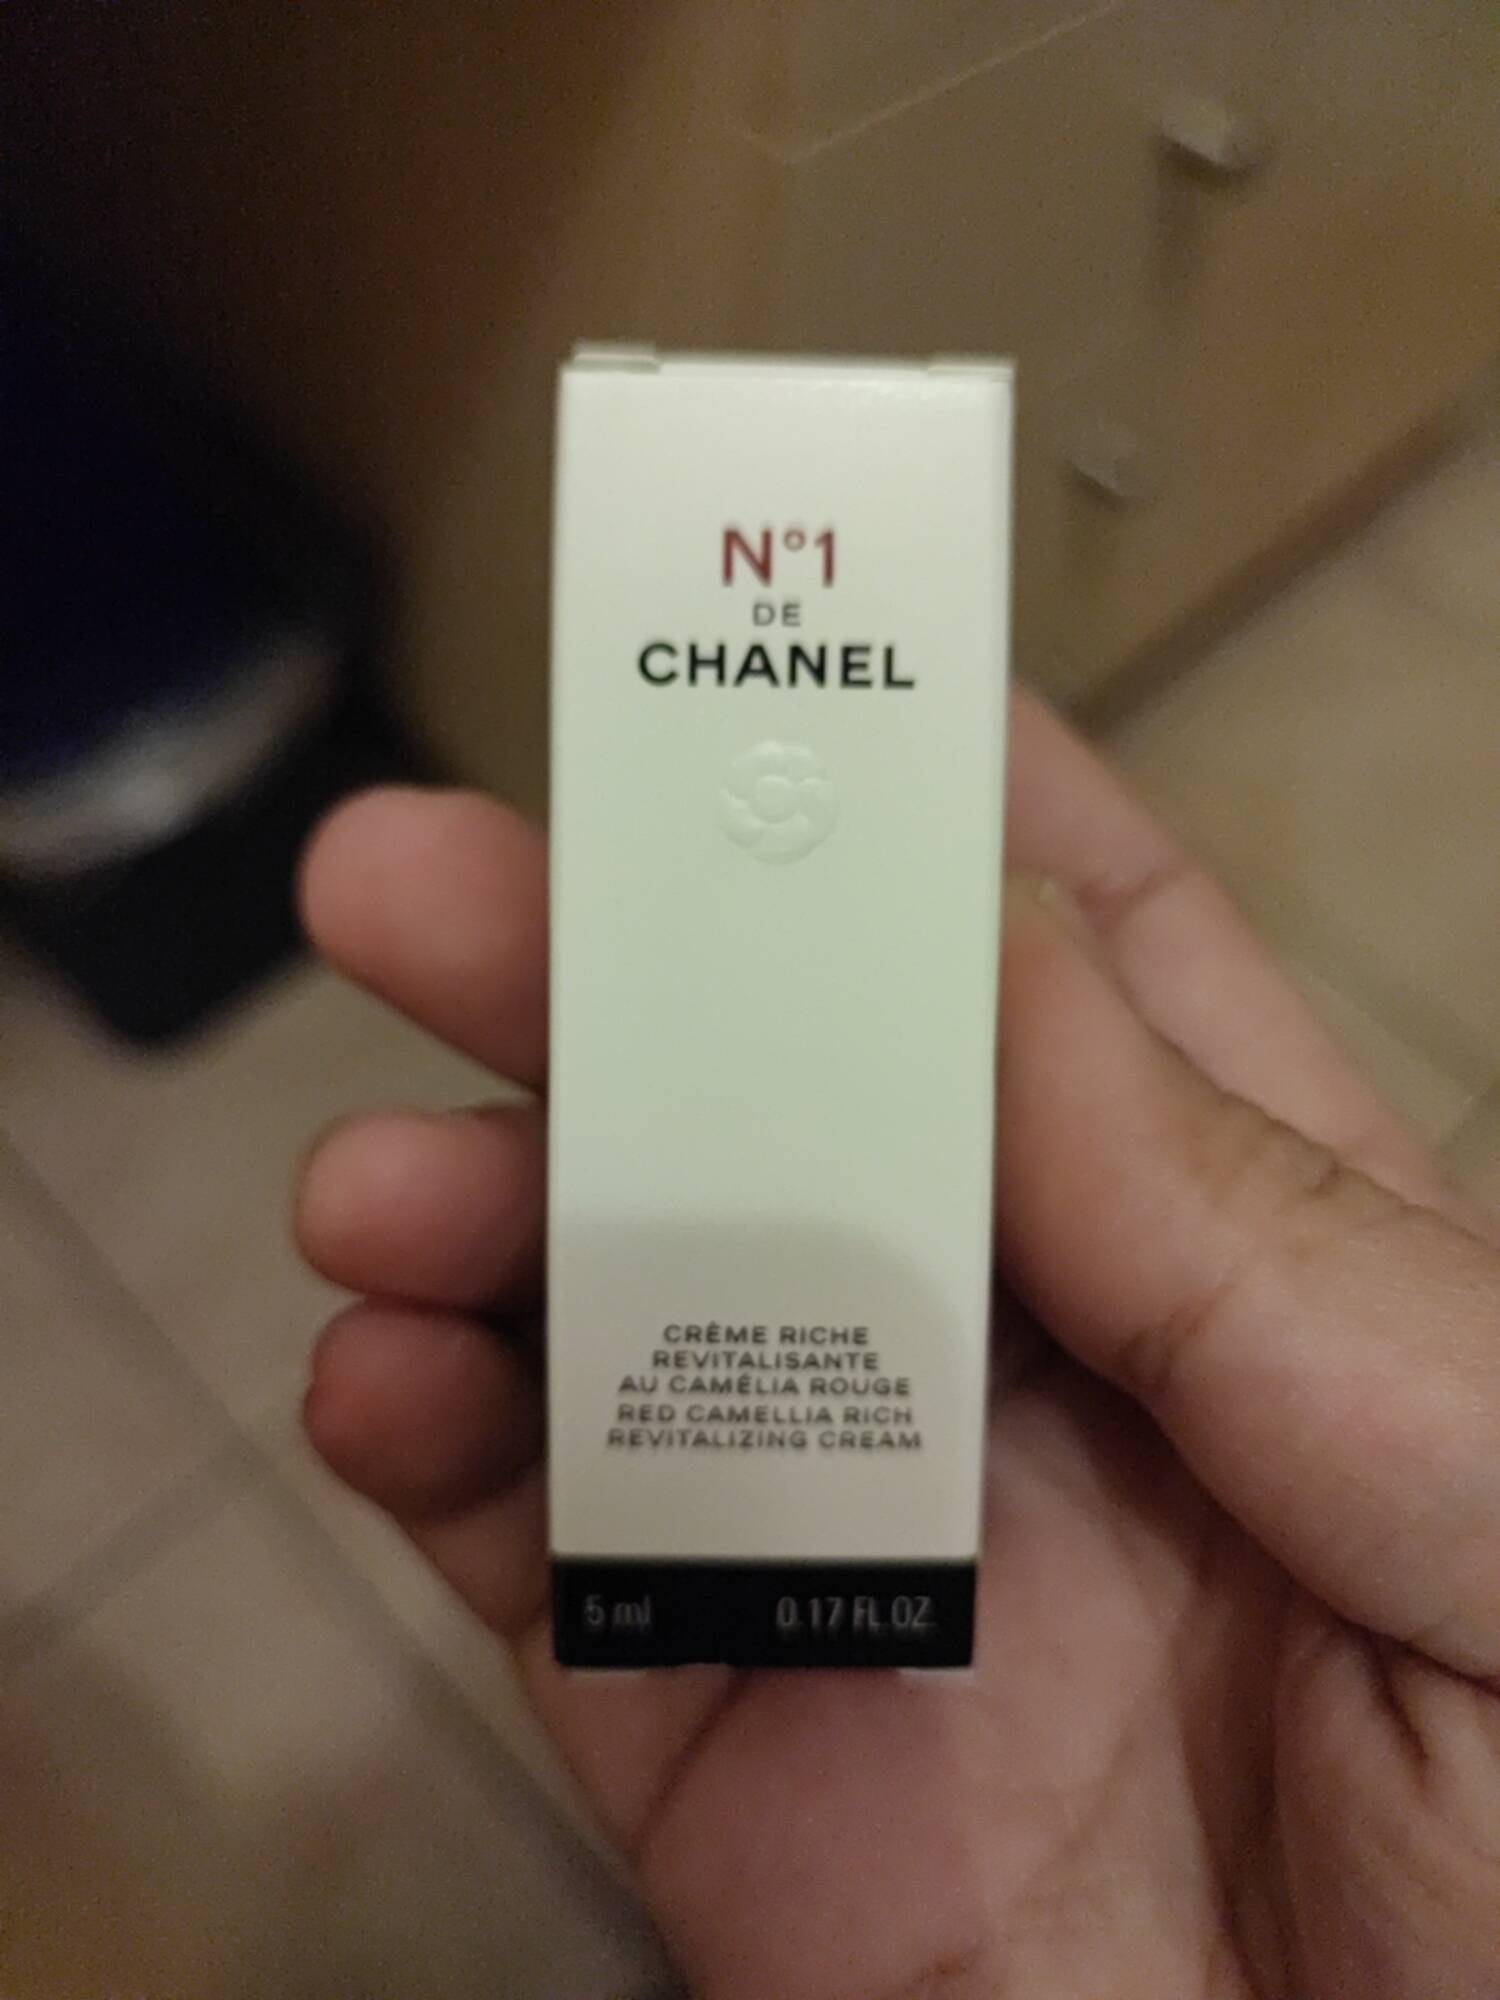 CHANEL - N° 1 de Chanel - Crème riche revitalisante au camélia rouge